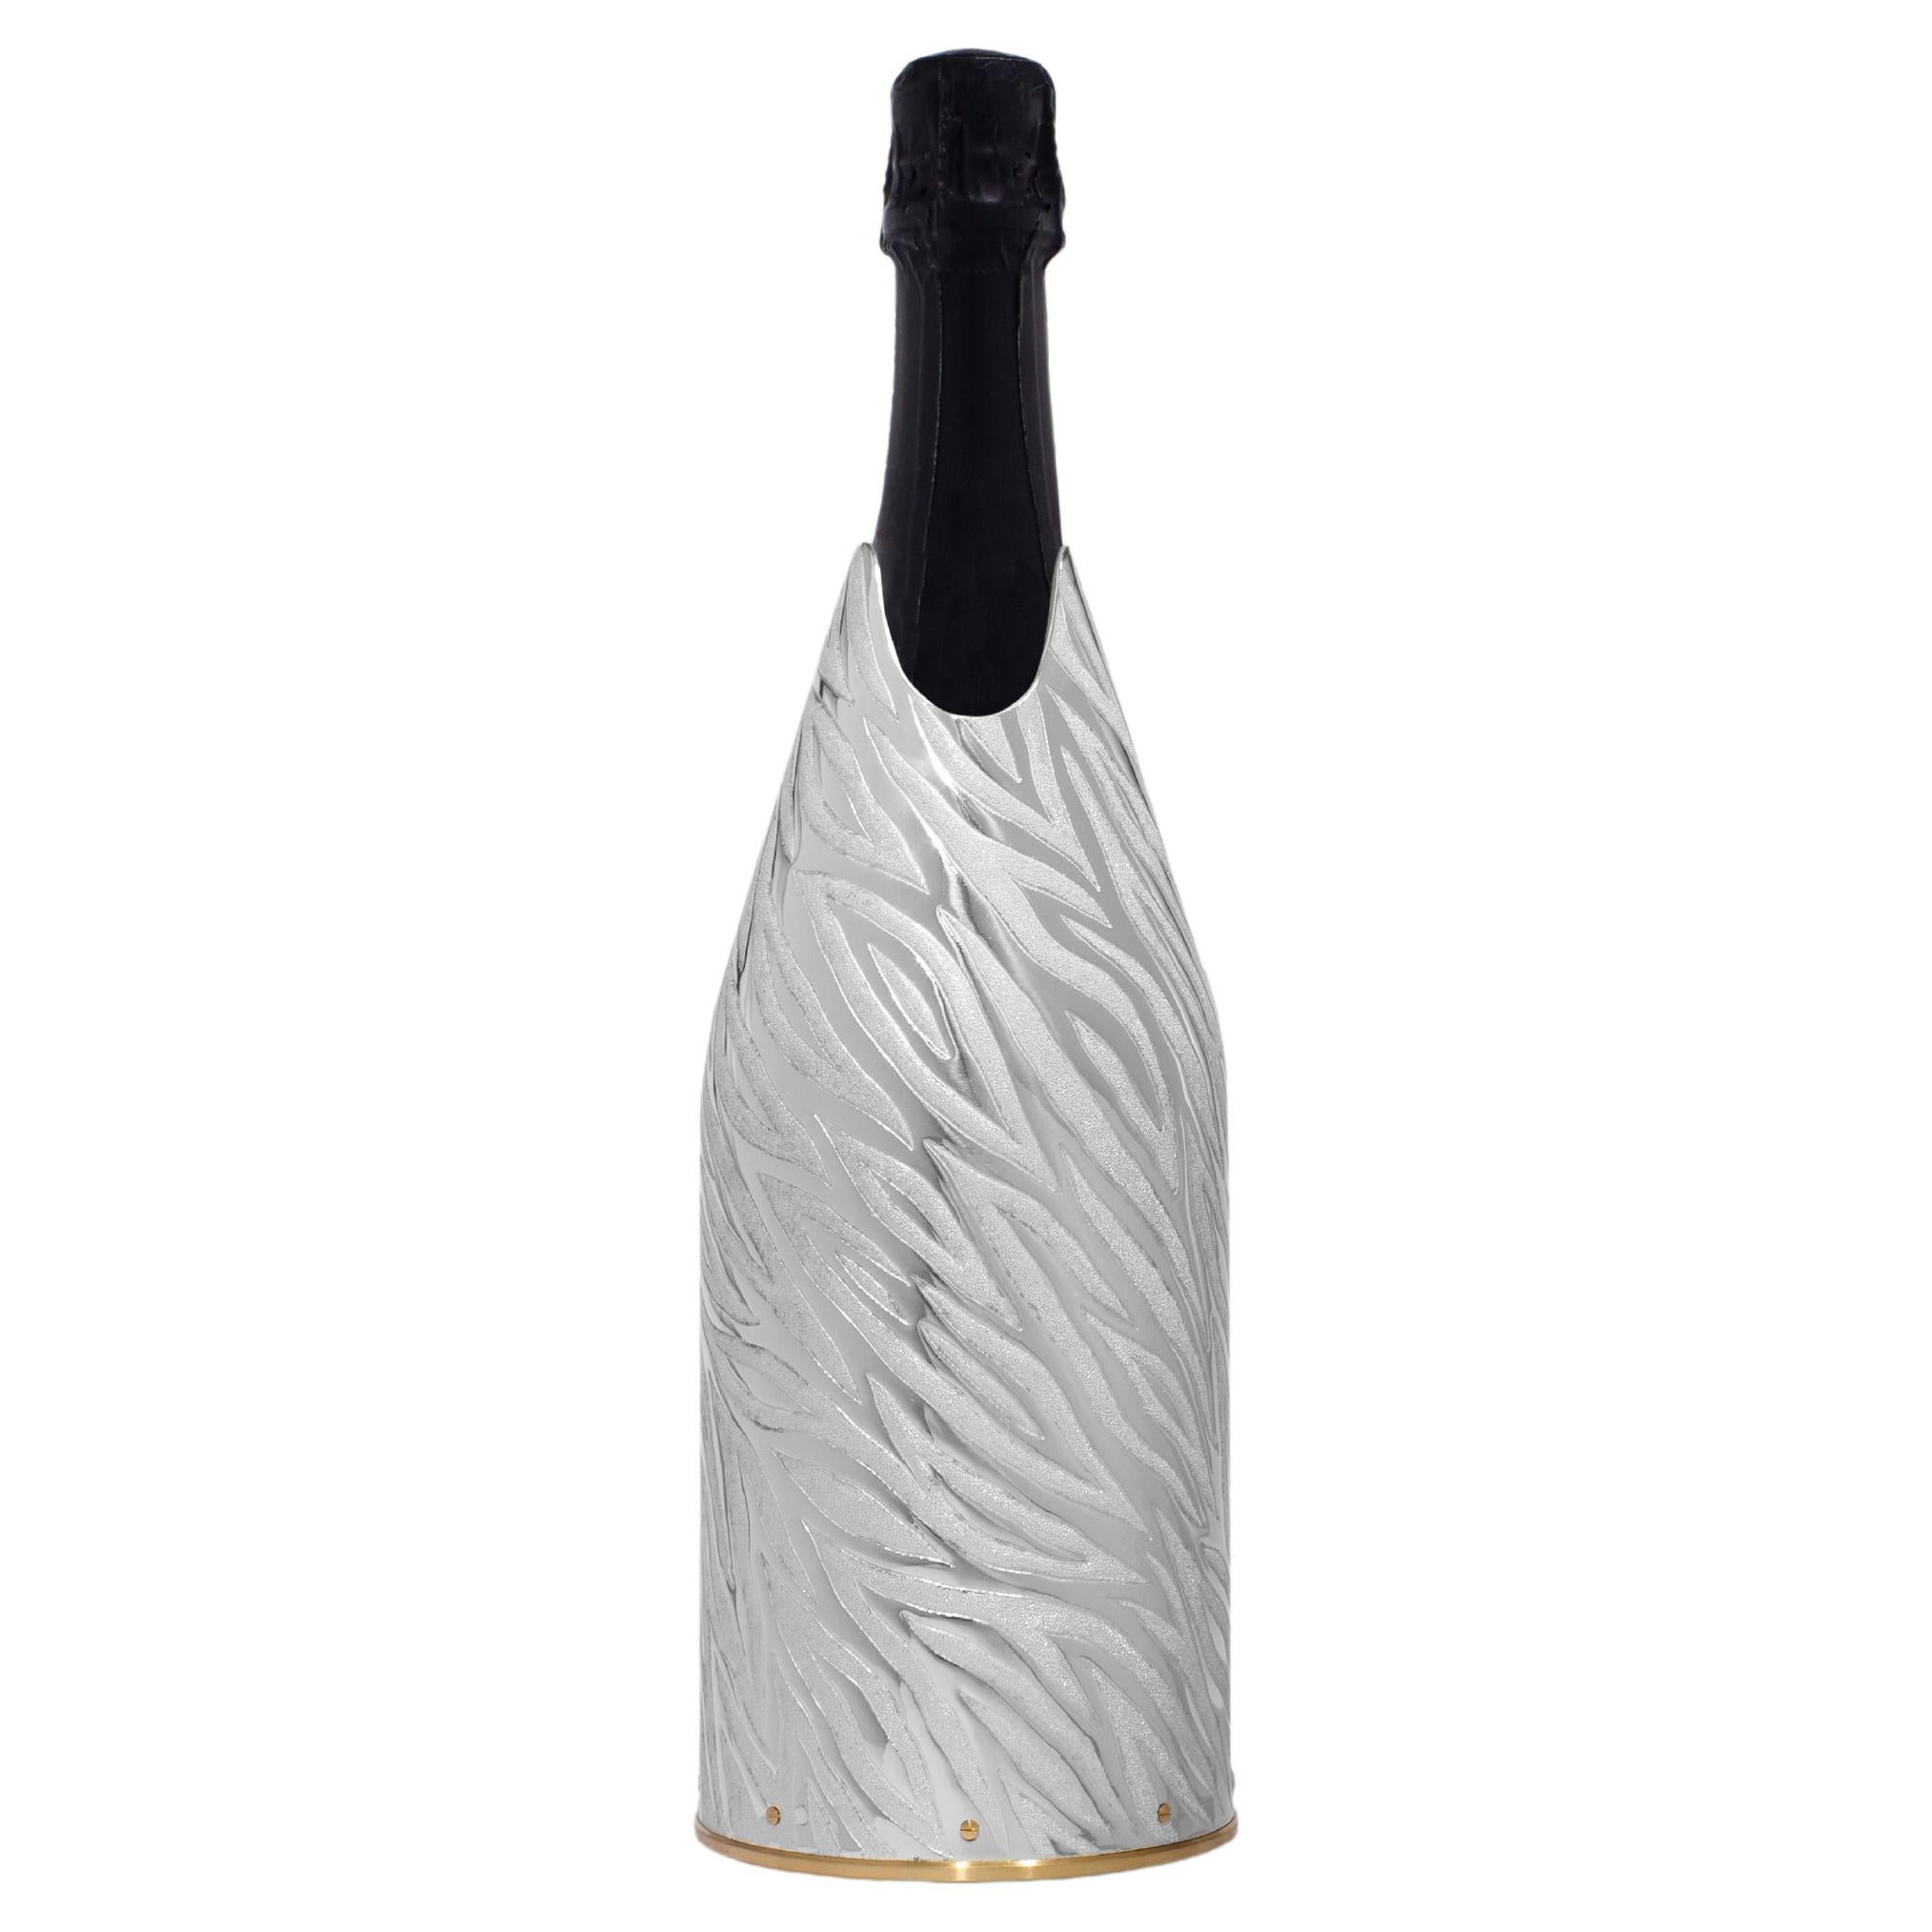 Dieses reine Silber 999/°° champagne K-OVER gehört zu unserer Collection K-OVER Design.  
 
Der K-OVER wurde von Marco Fedi, einem Florentiner Goldschmiedemeister, handgefertigt.
Die für dieses K-OVER verwendeten Techniken sind Gravieren und